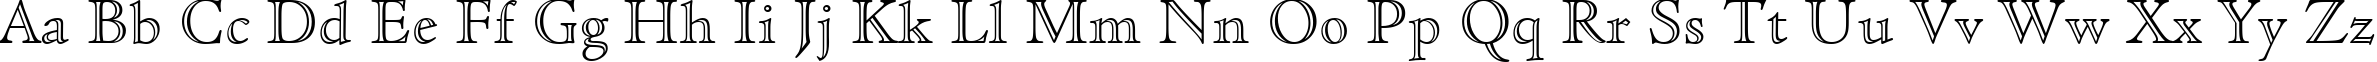 Пример написания английского алфавита шрифтом Cloister Open Face BT